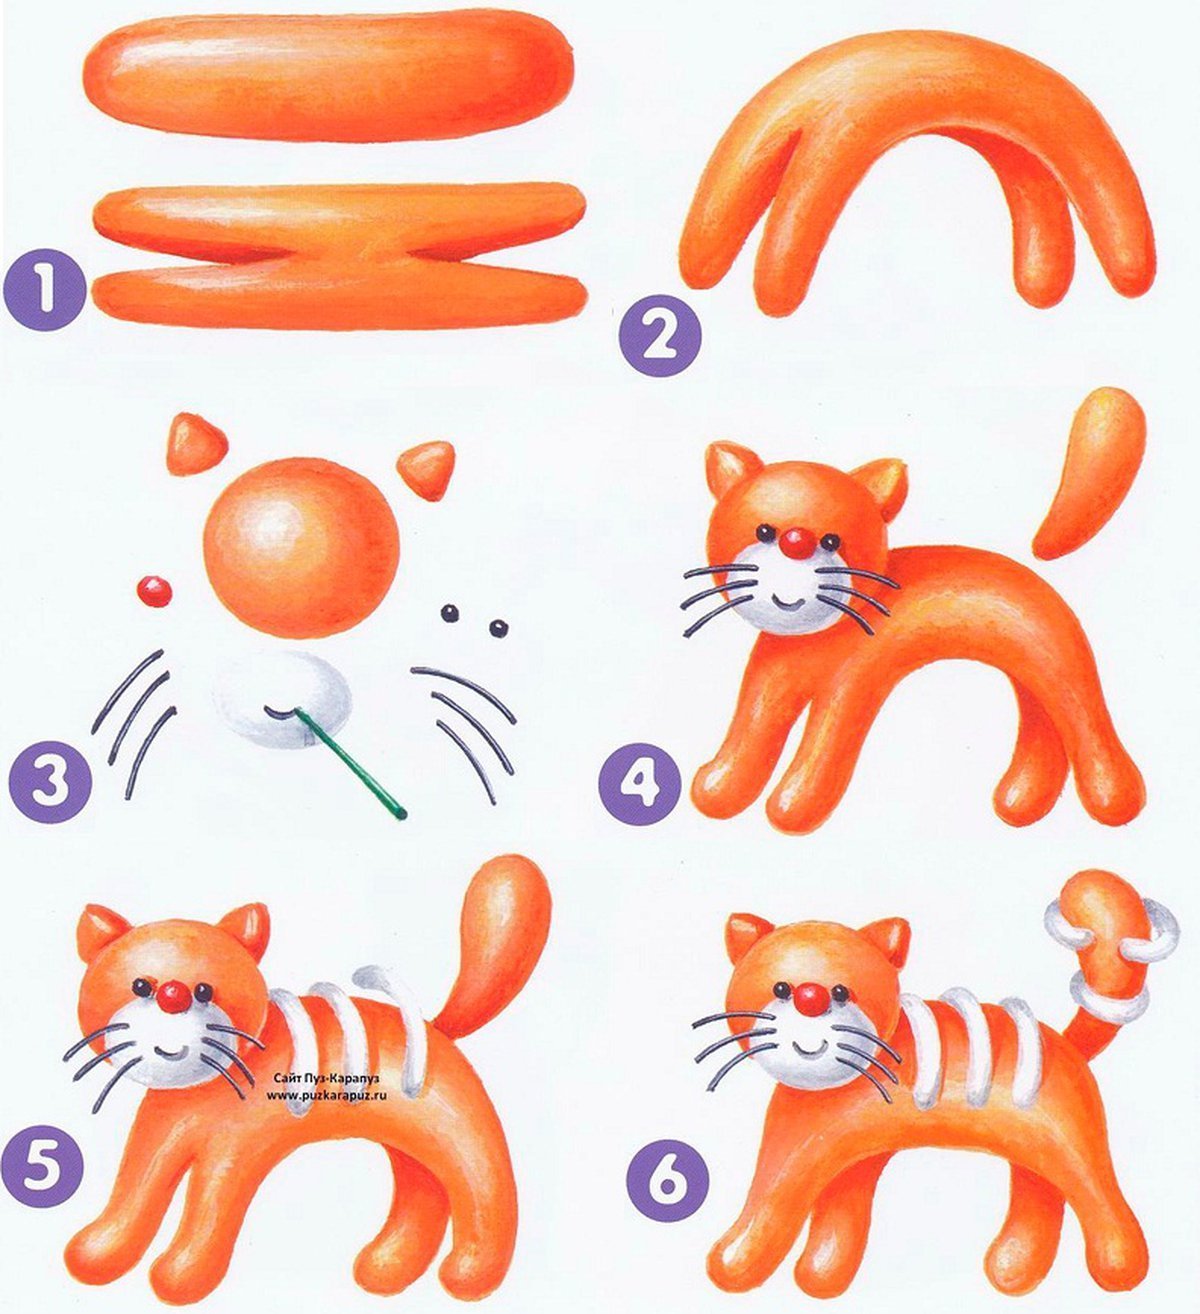 Как сделать из пластилина год. Лепить из пластилина кошку инструкция для детей. Схемы лепки для дошкольников. Слепки из пластилина. Схема лепки животных из пластилина.